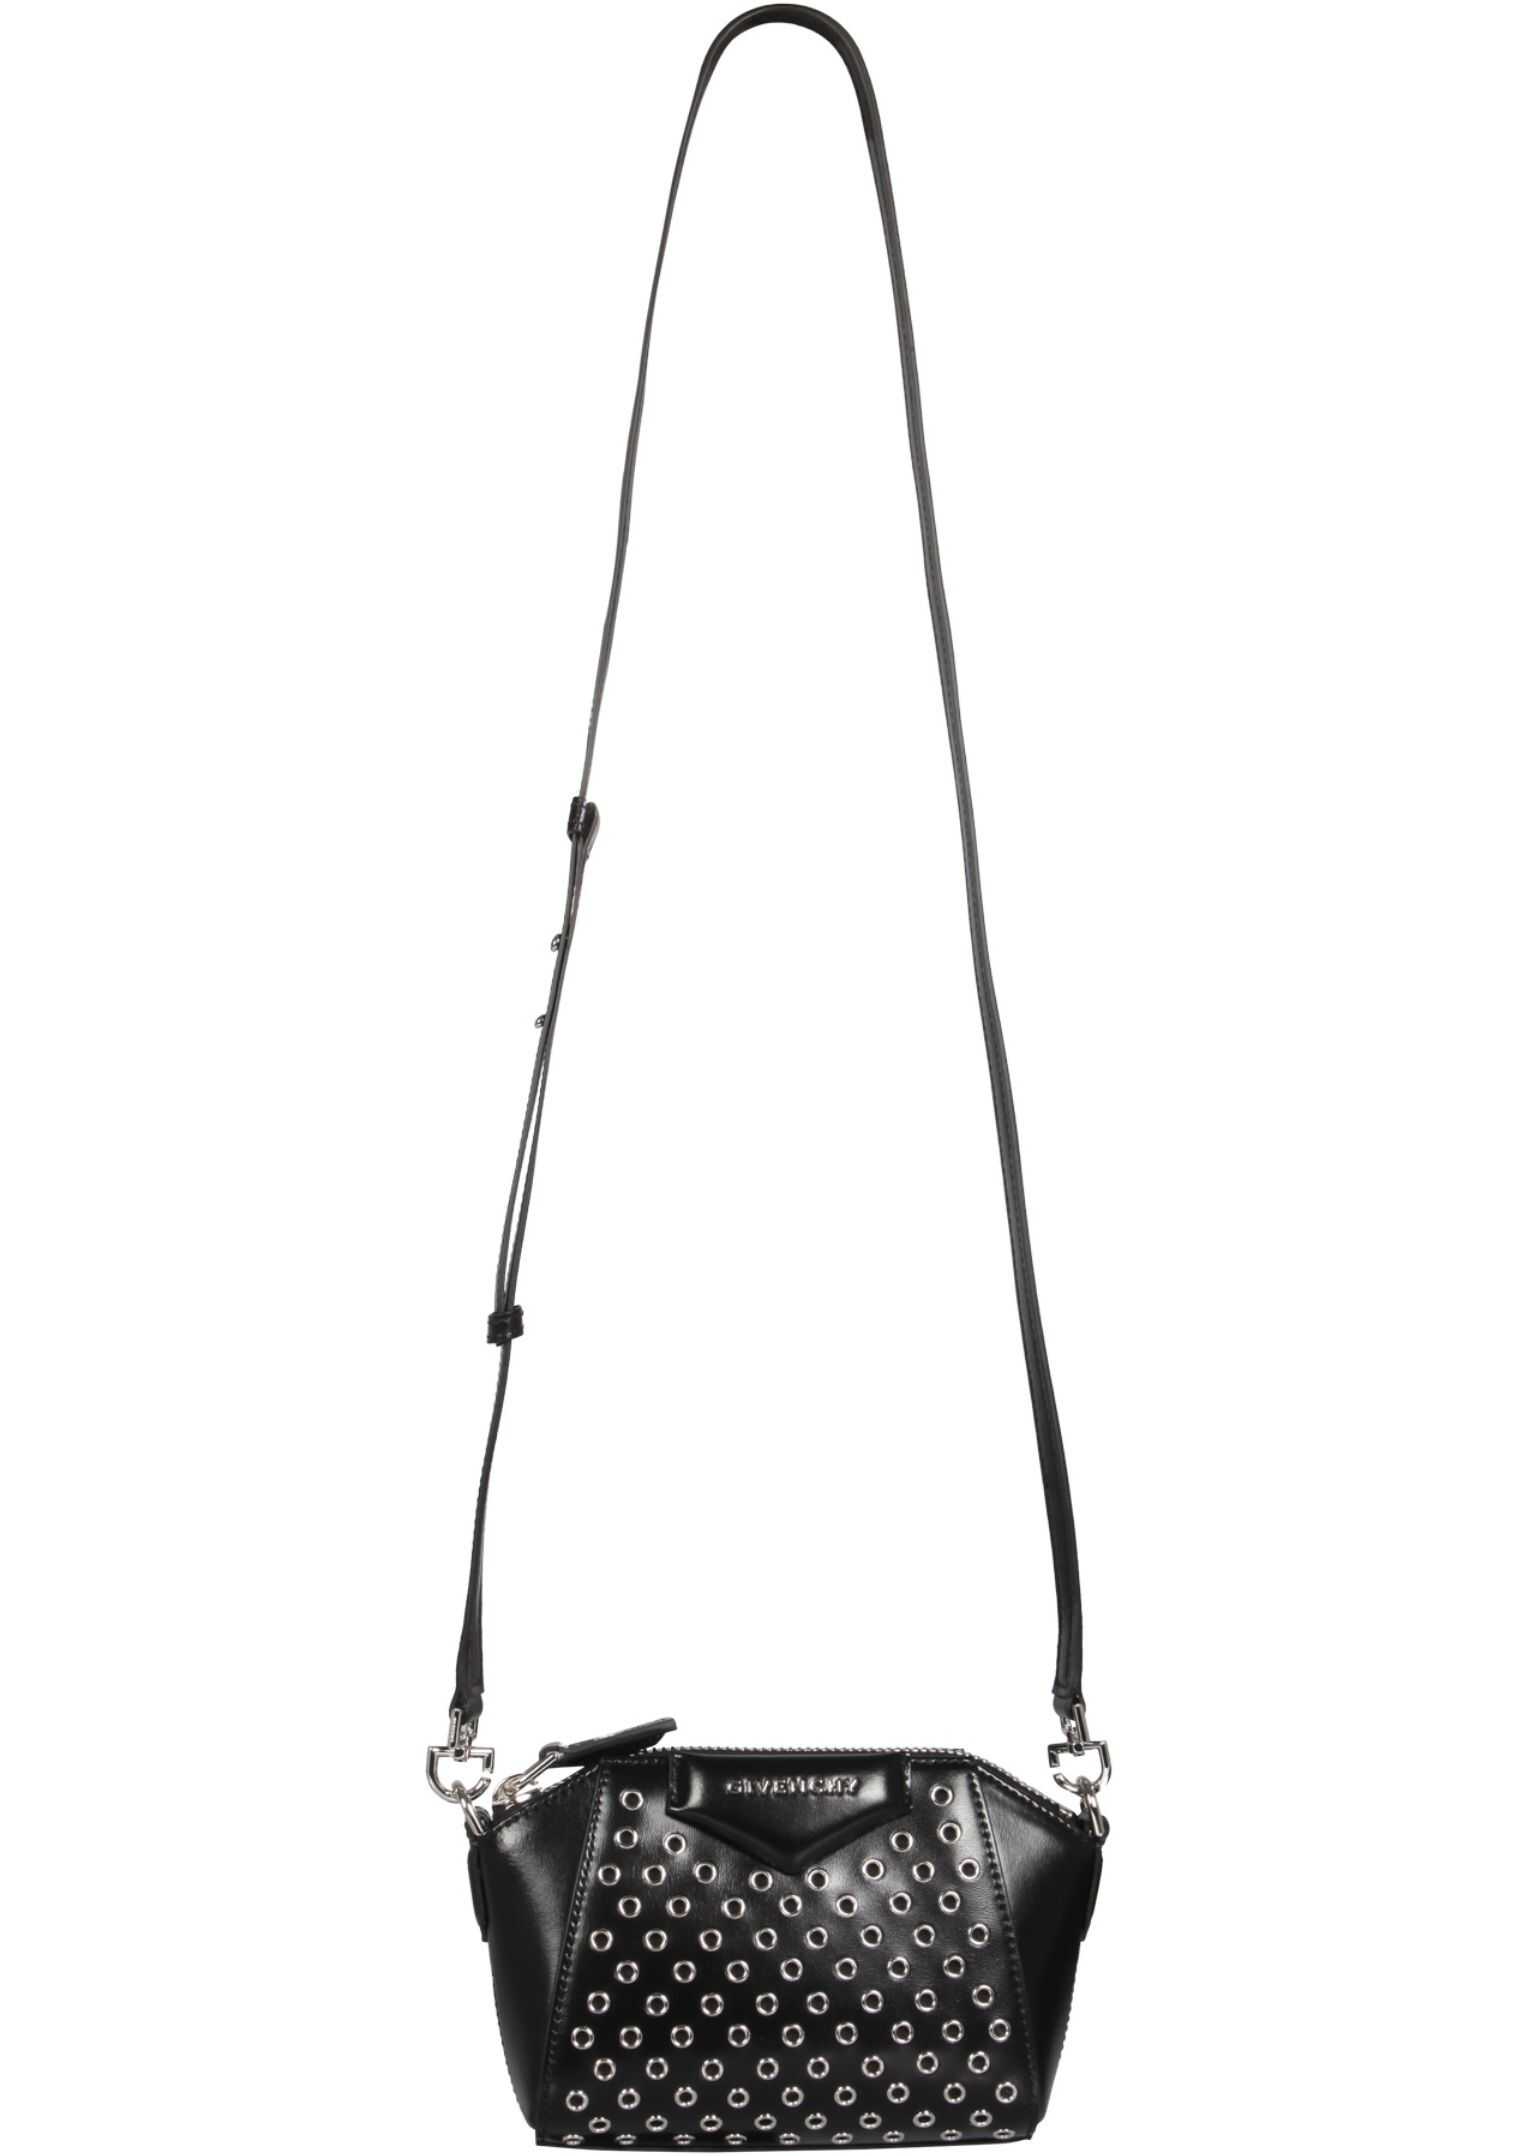 Givenchy Antigona Bag BBU017B12Q_001 BLACK